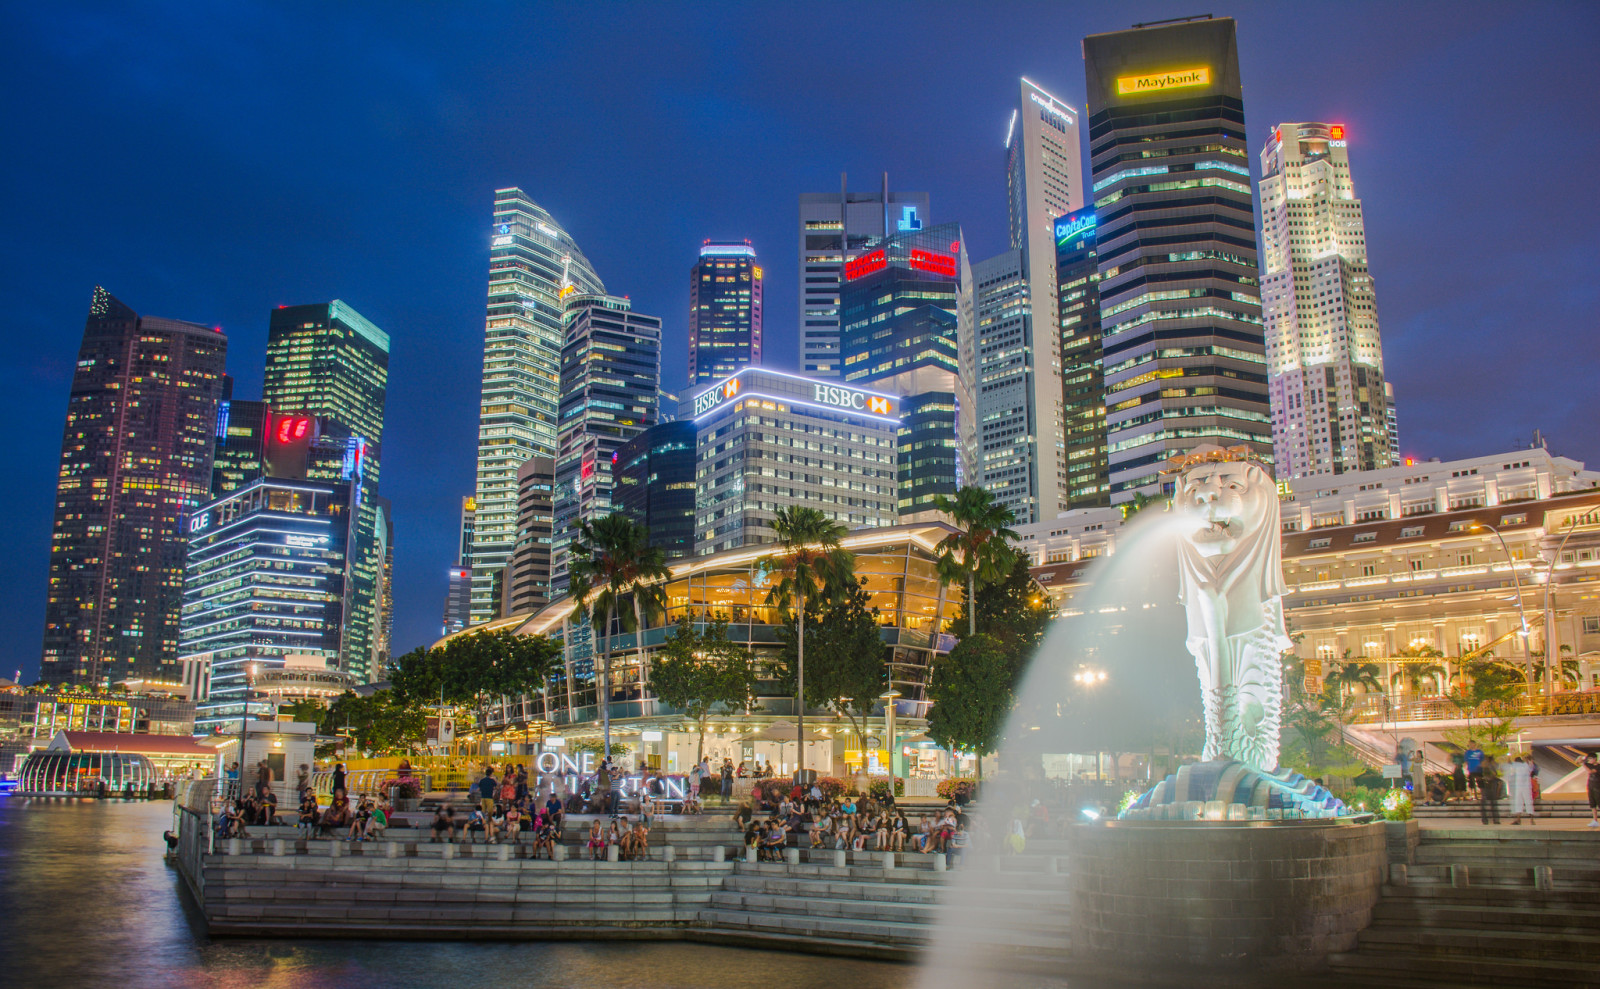 灯, 晚, 家, 人, 阶段, 新加坡, 滨海湾, 喷泉